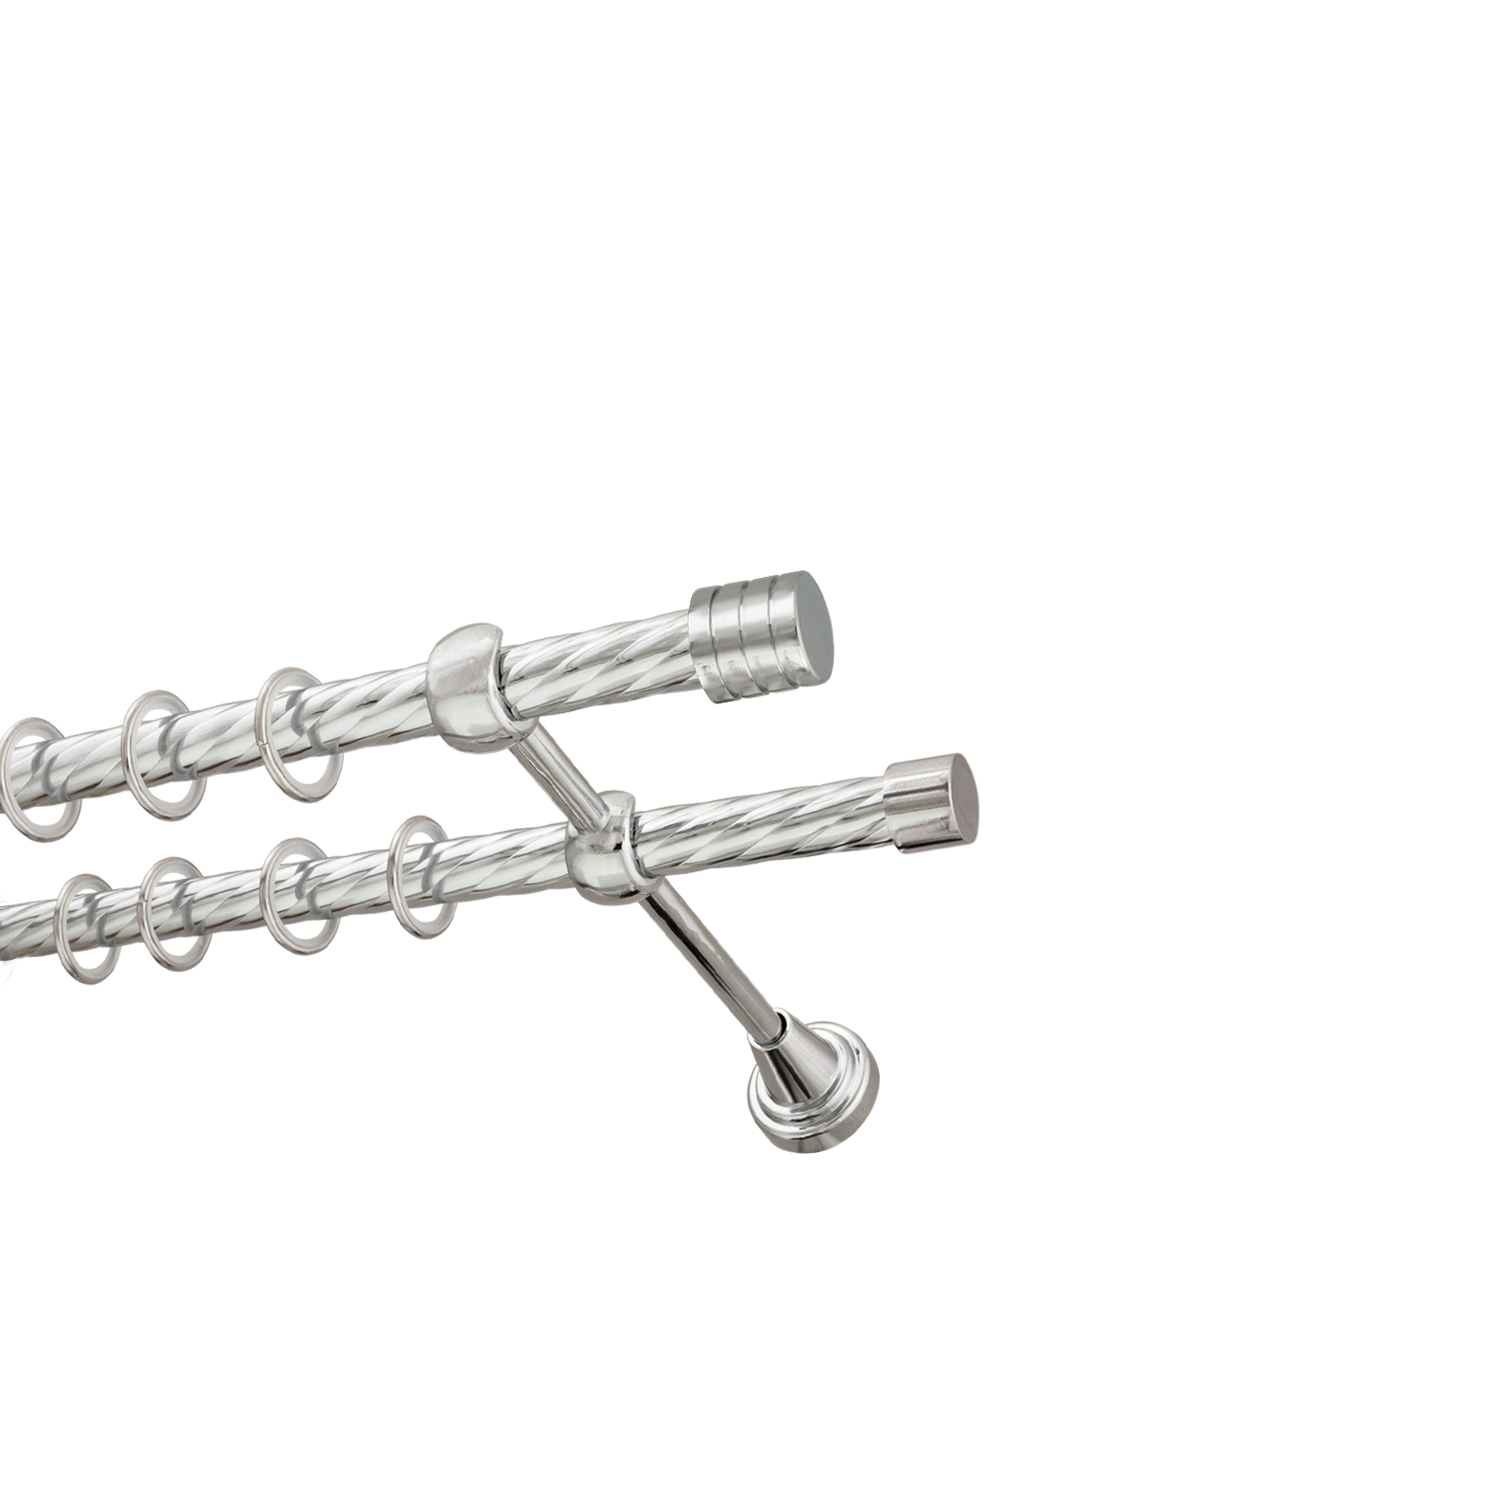 Металлический карниз для штор Подиум, двухрядный 16/16 мм, серебро, витая штанга, длина 140 см - фото Wikidecor.ru